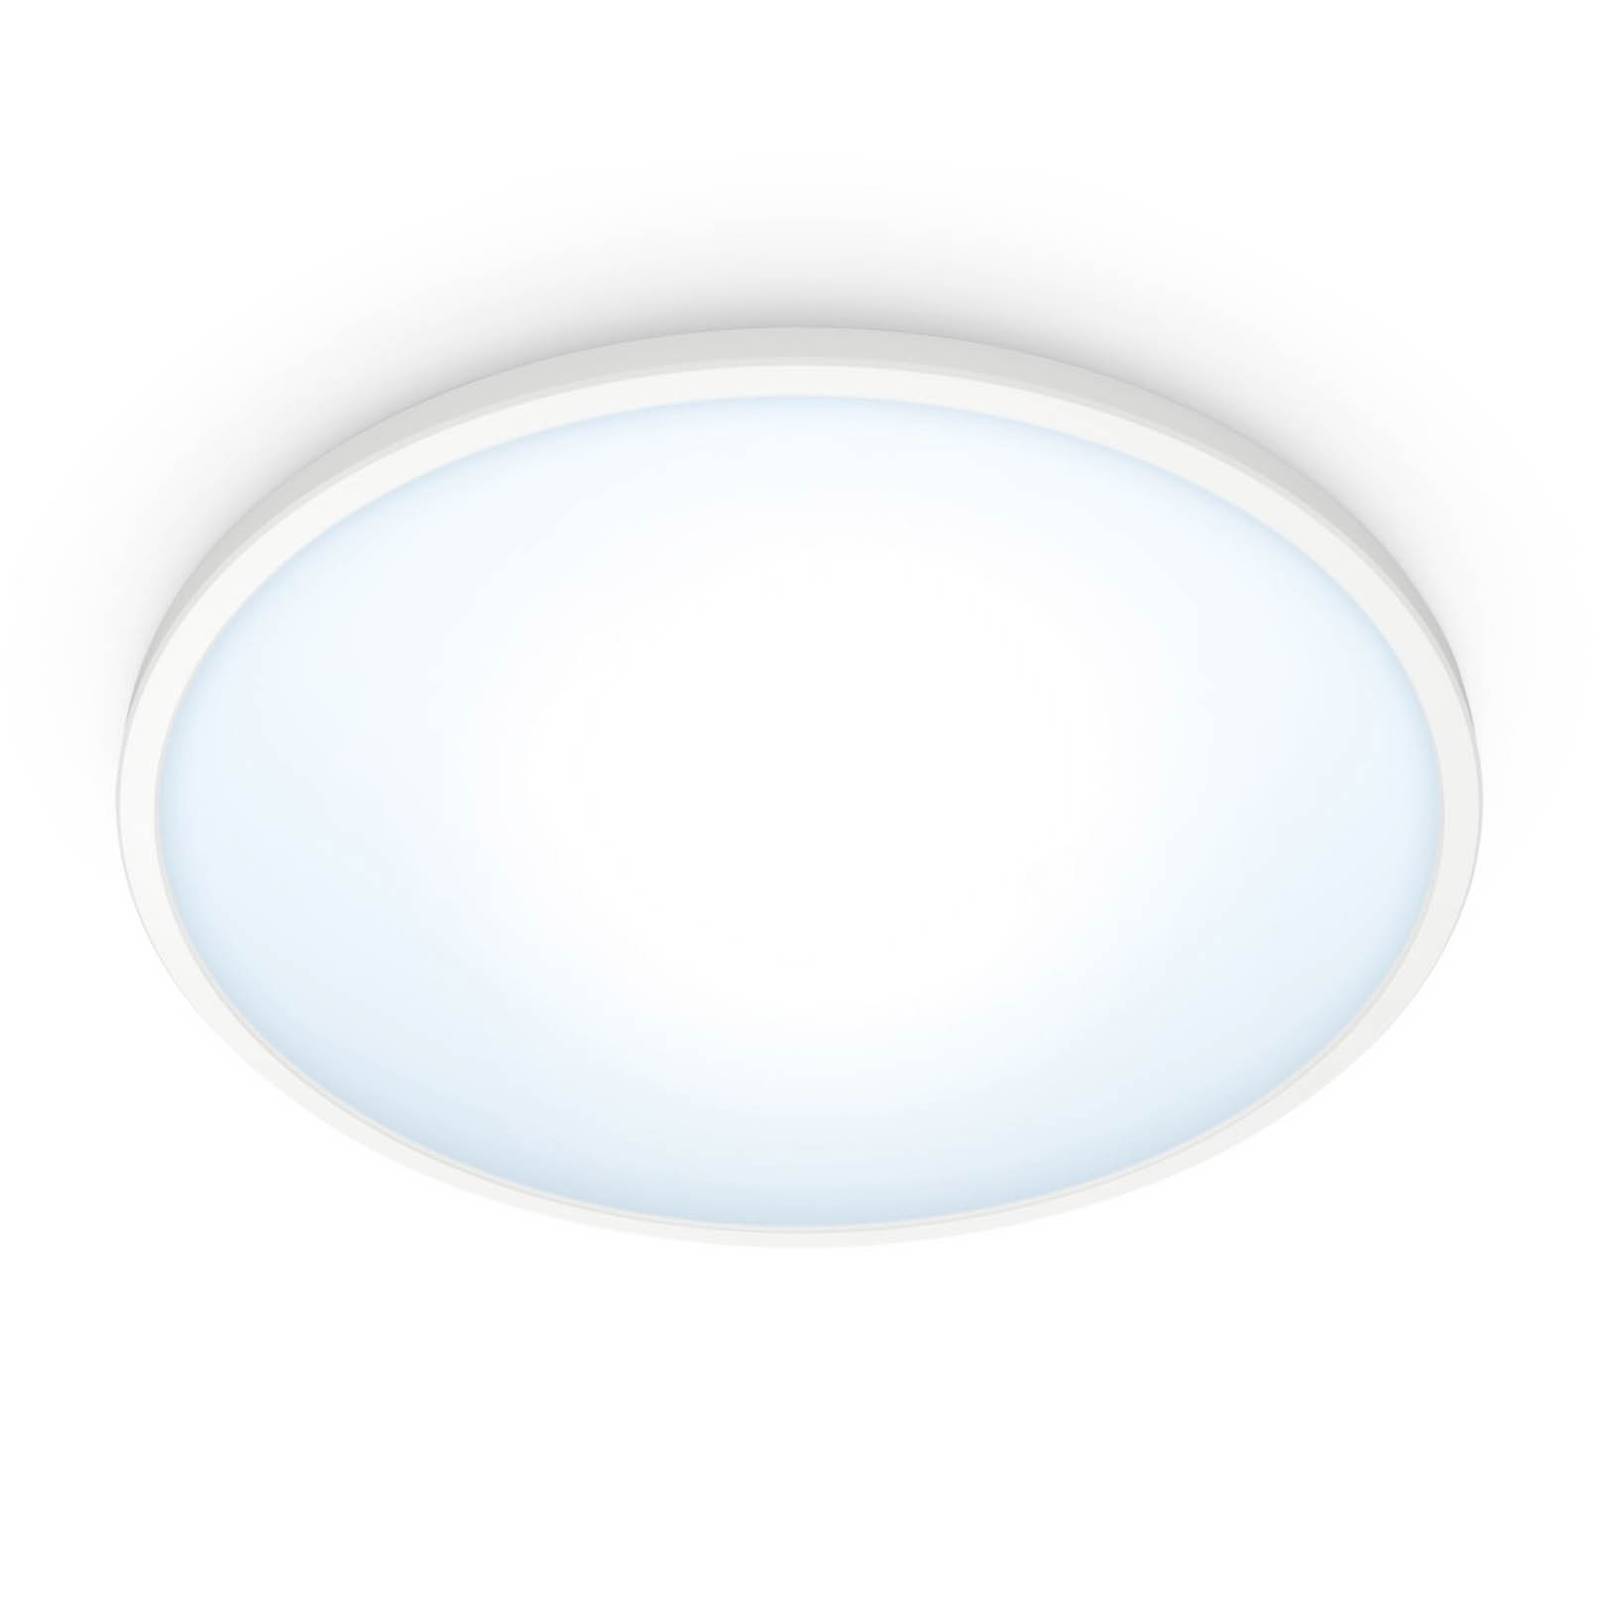 WiZ Super Slim plafonnier LED, 14W, blanc